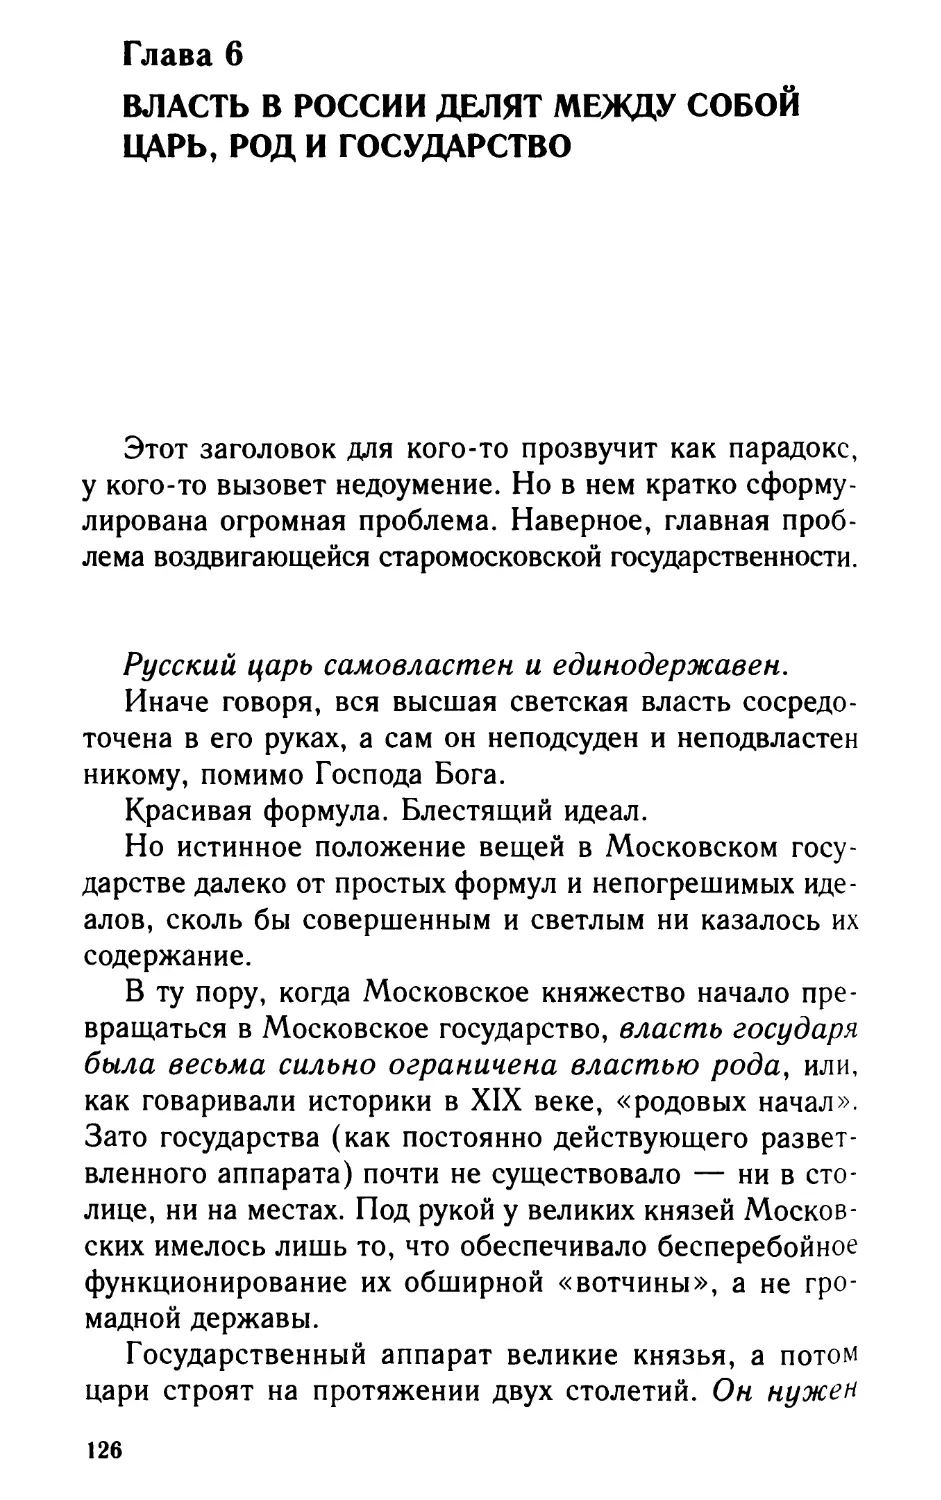 Глава 6. Власть в России делят между собой царь, род и государство